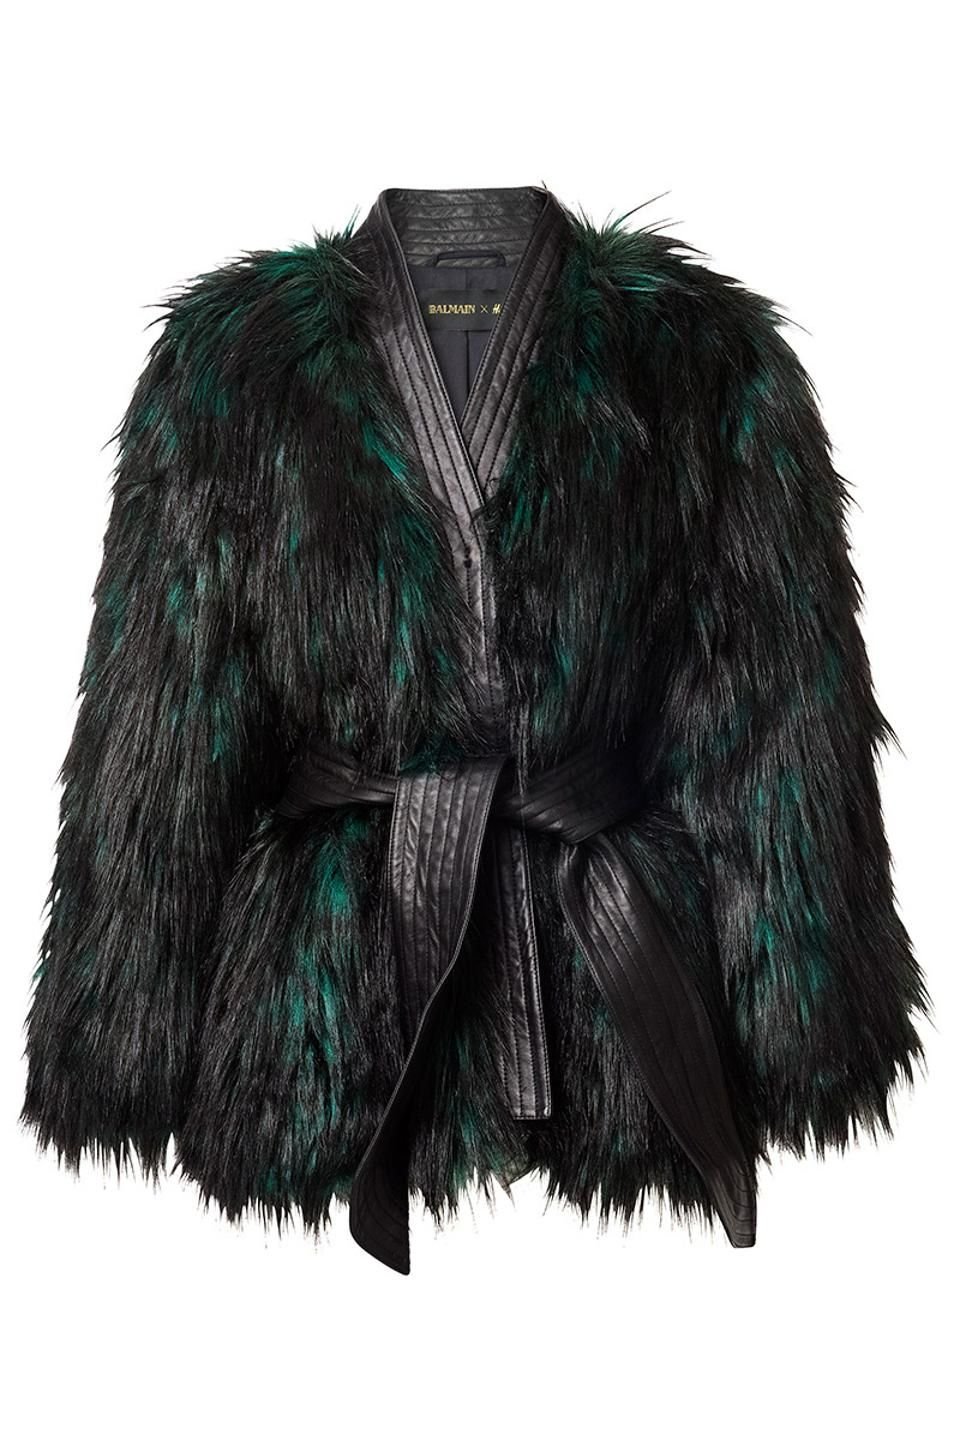 Balmain x H&M Faux Fur Jacket More